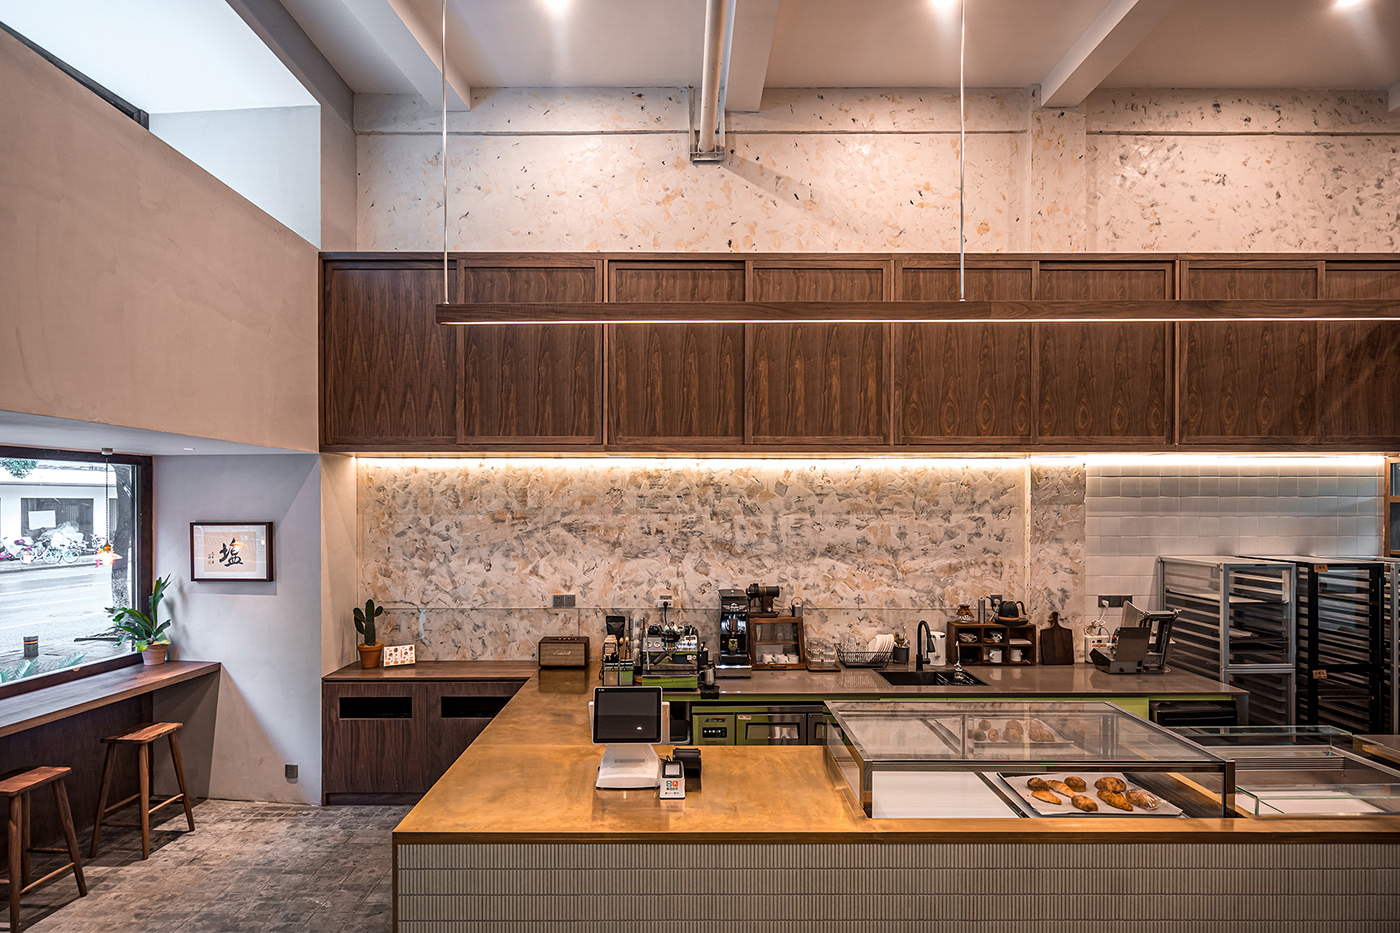 bakery cafe china design design ideas hcreates Interior Interior Architecture interior design  shanghai